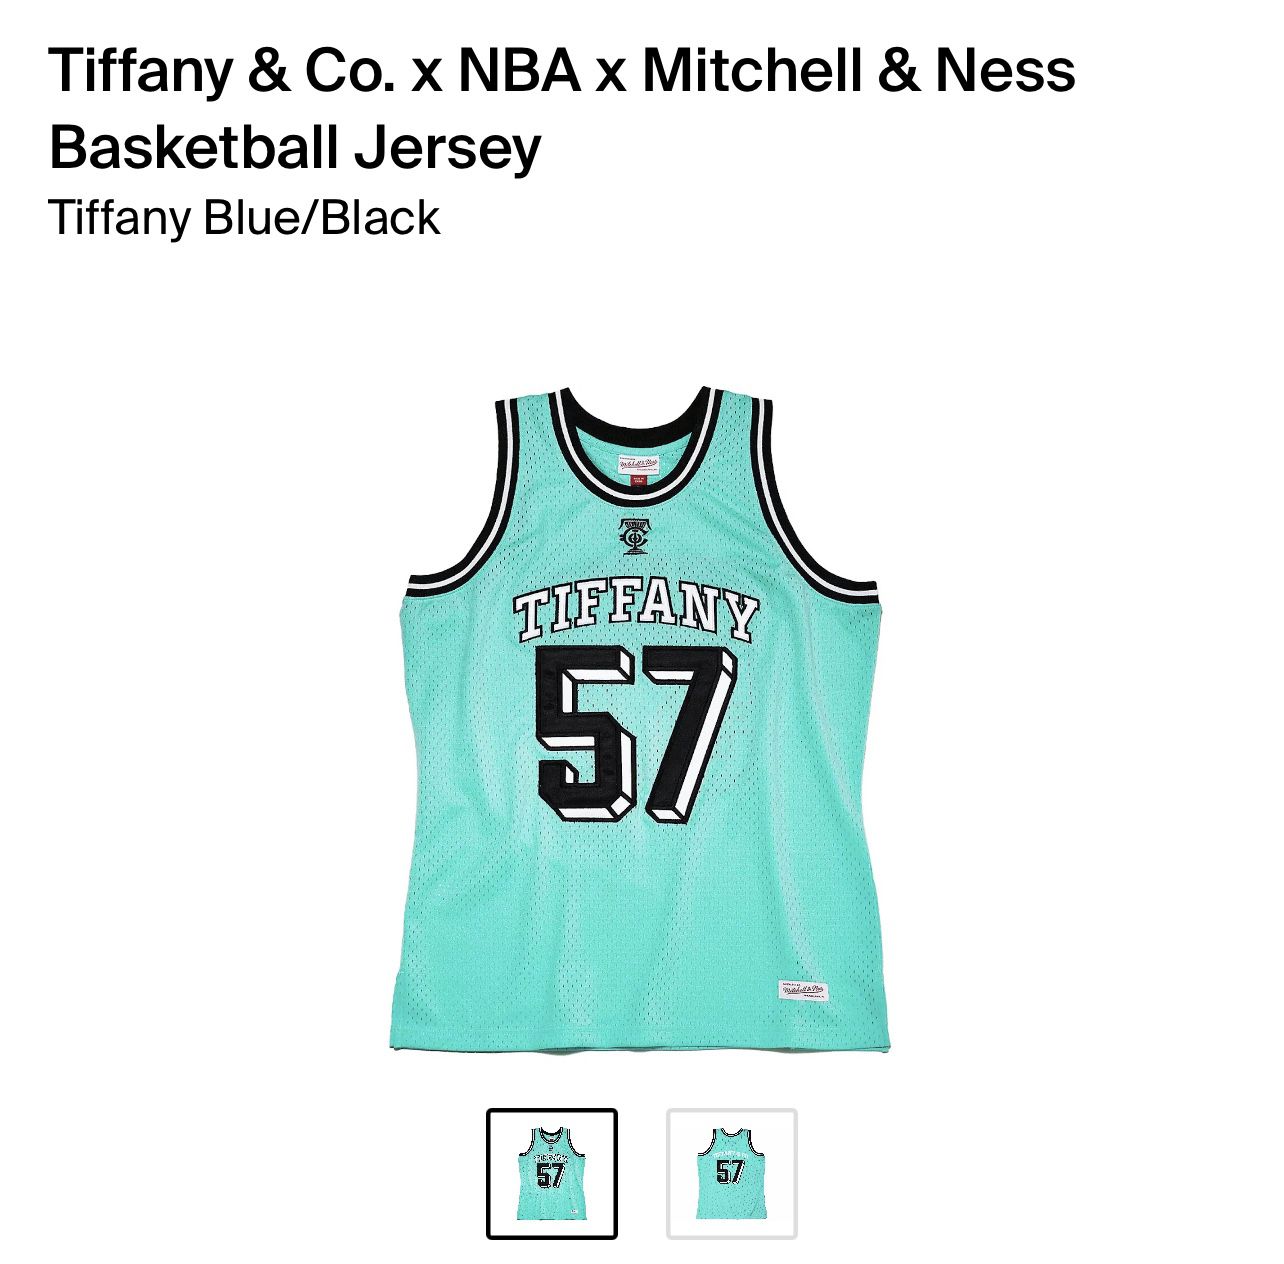 x Mitchell & Ness basketball jersey